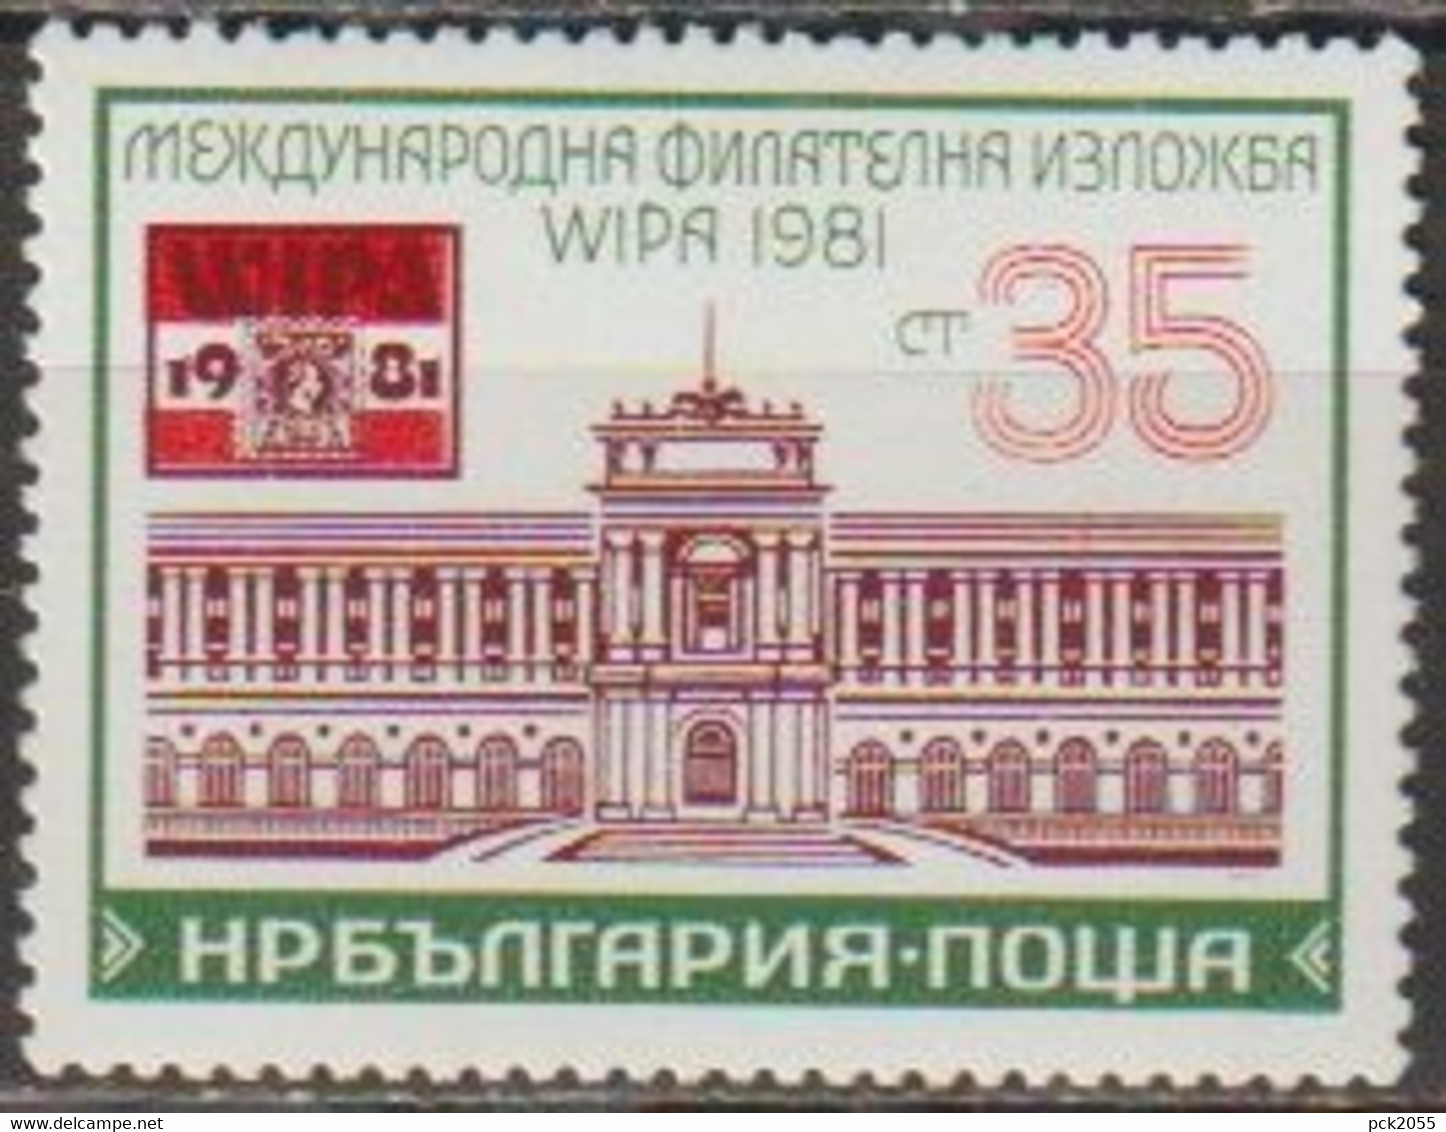 Bulgarien 1981 Mi-Nr.2992 ** Postfrisch Intern. Briefmarkenausstellung, WIPA 81 Wien (C 131)günstige Versandkosten - Ongebruikt